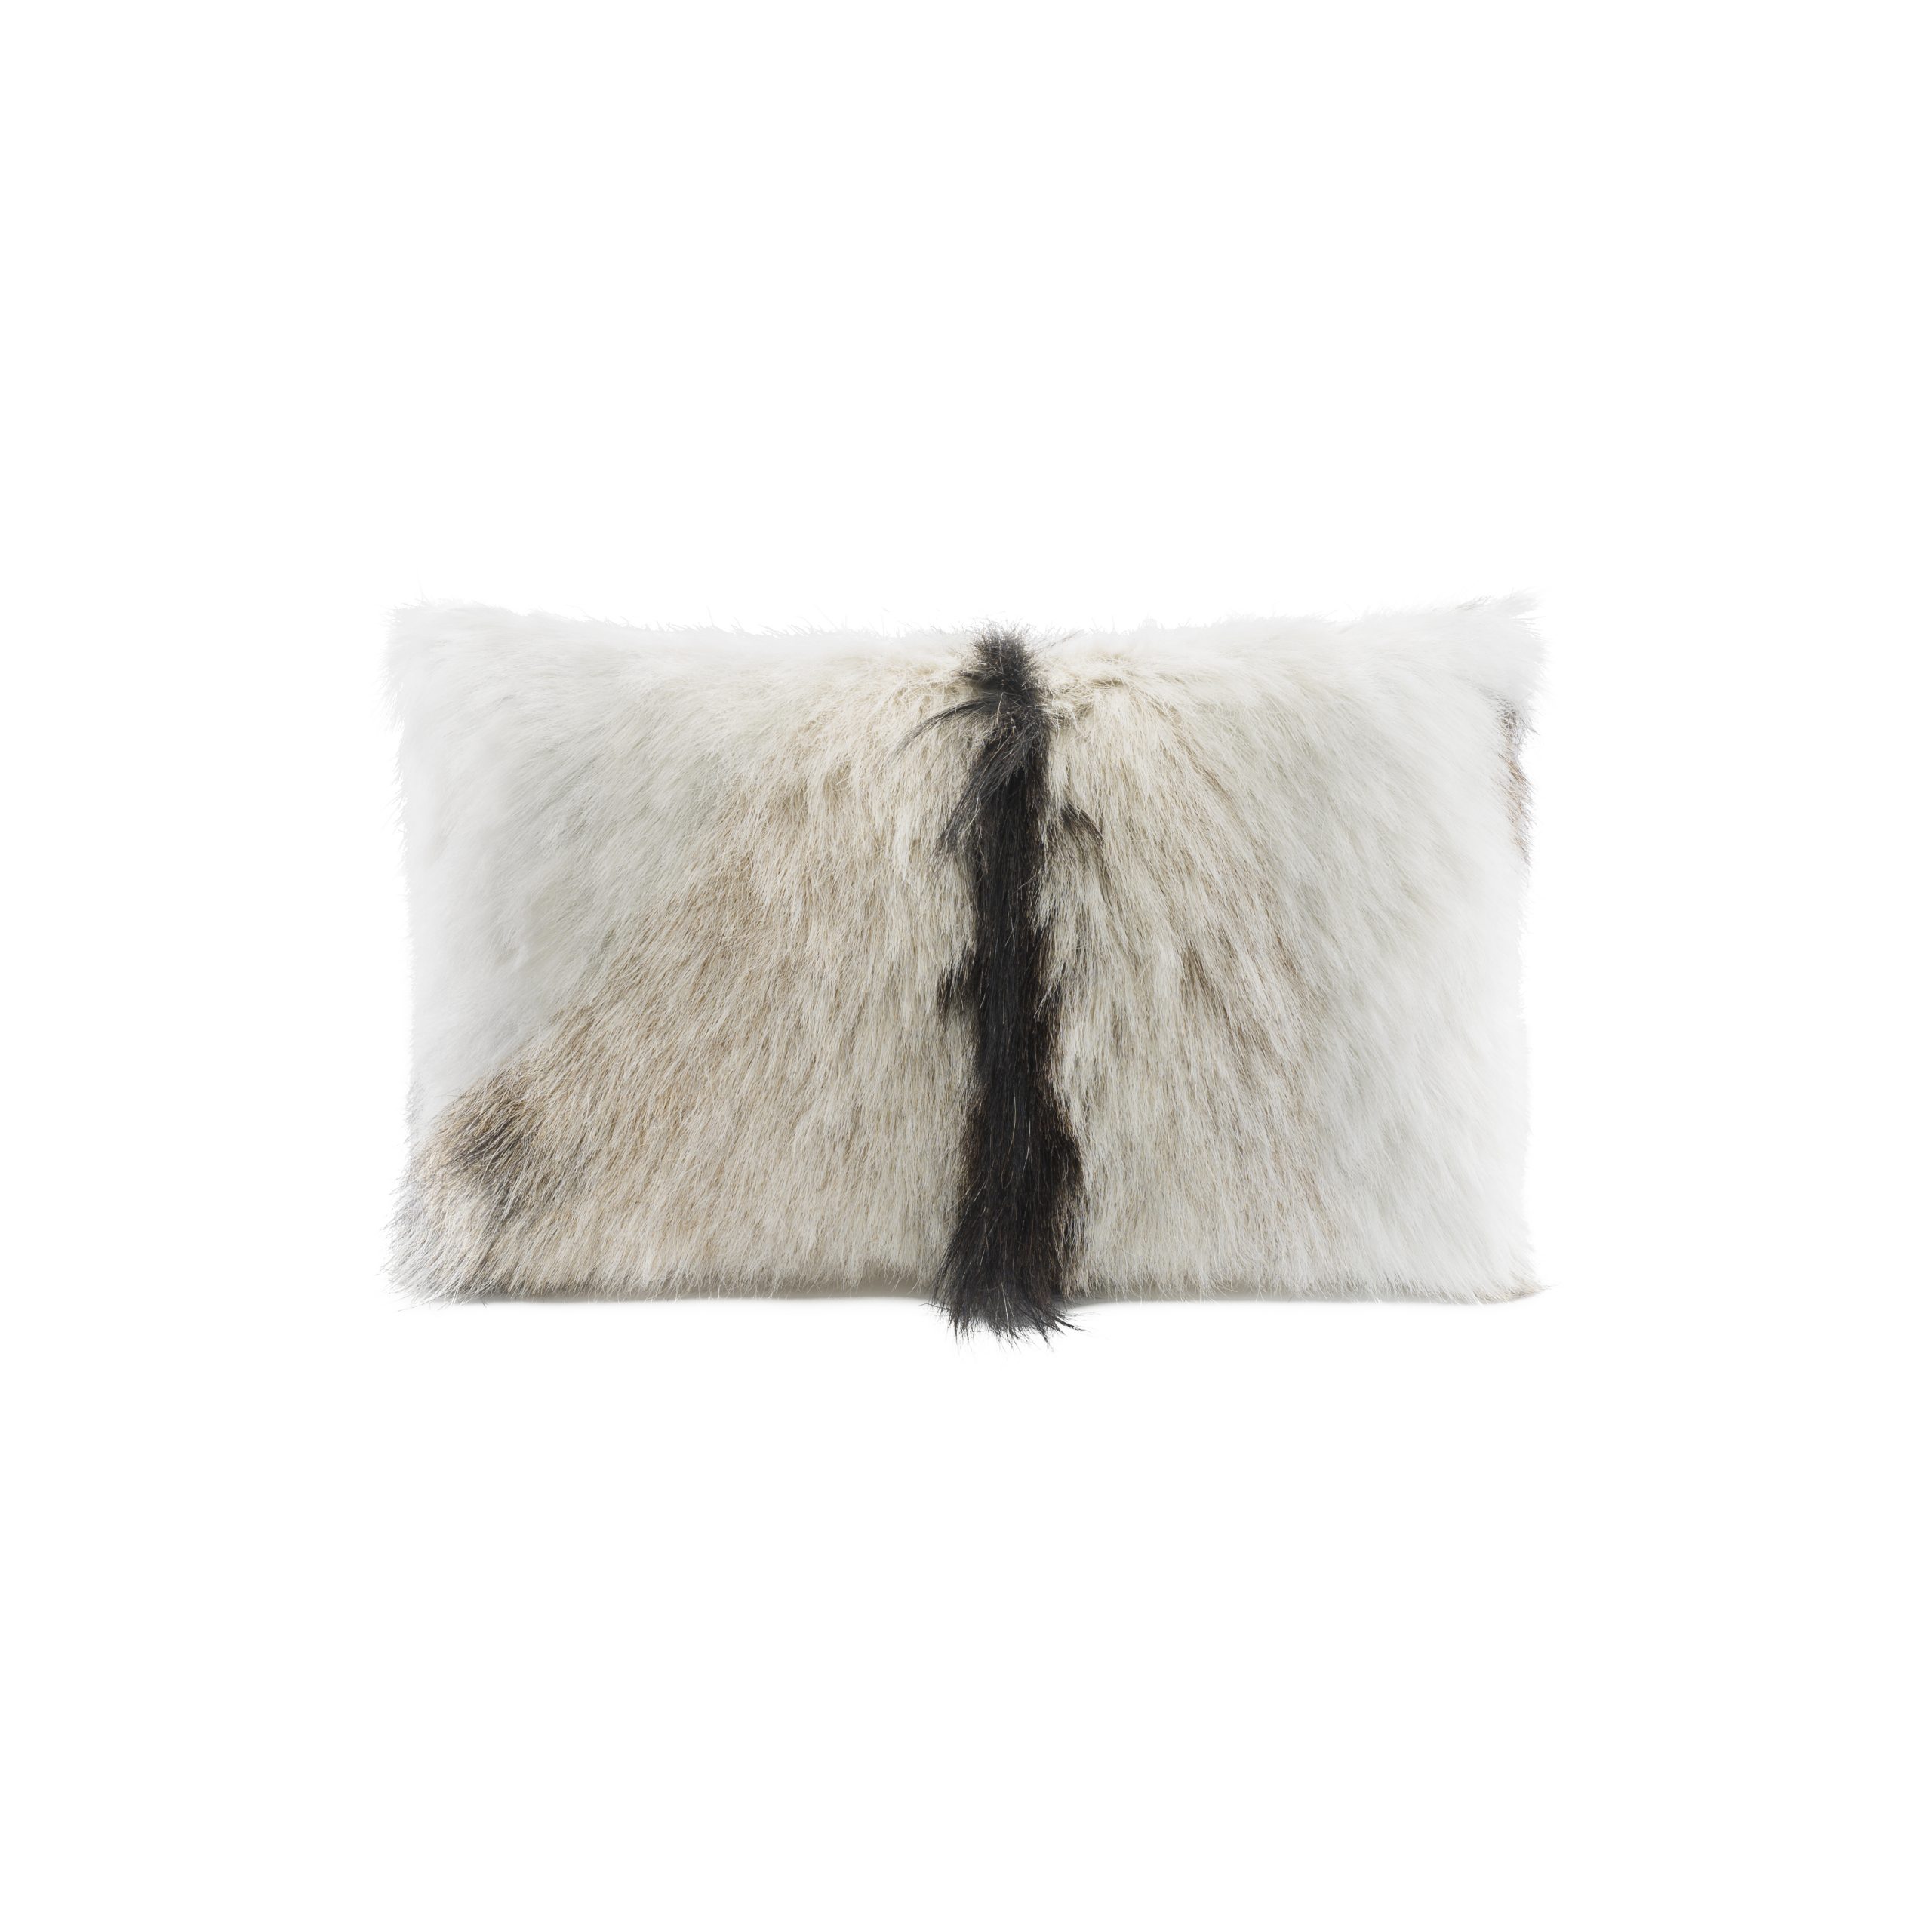 woola-goat-cushion-rectangle